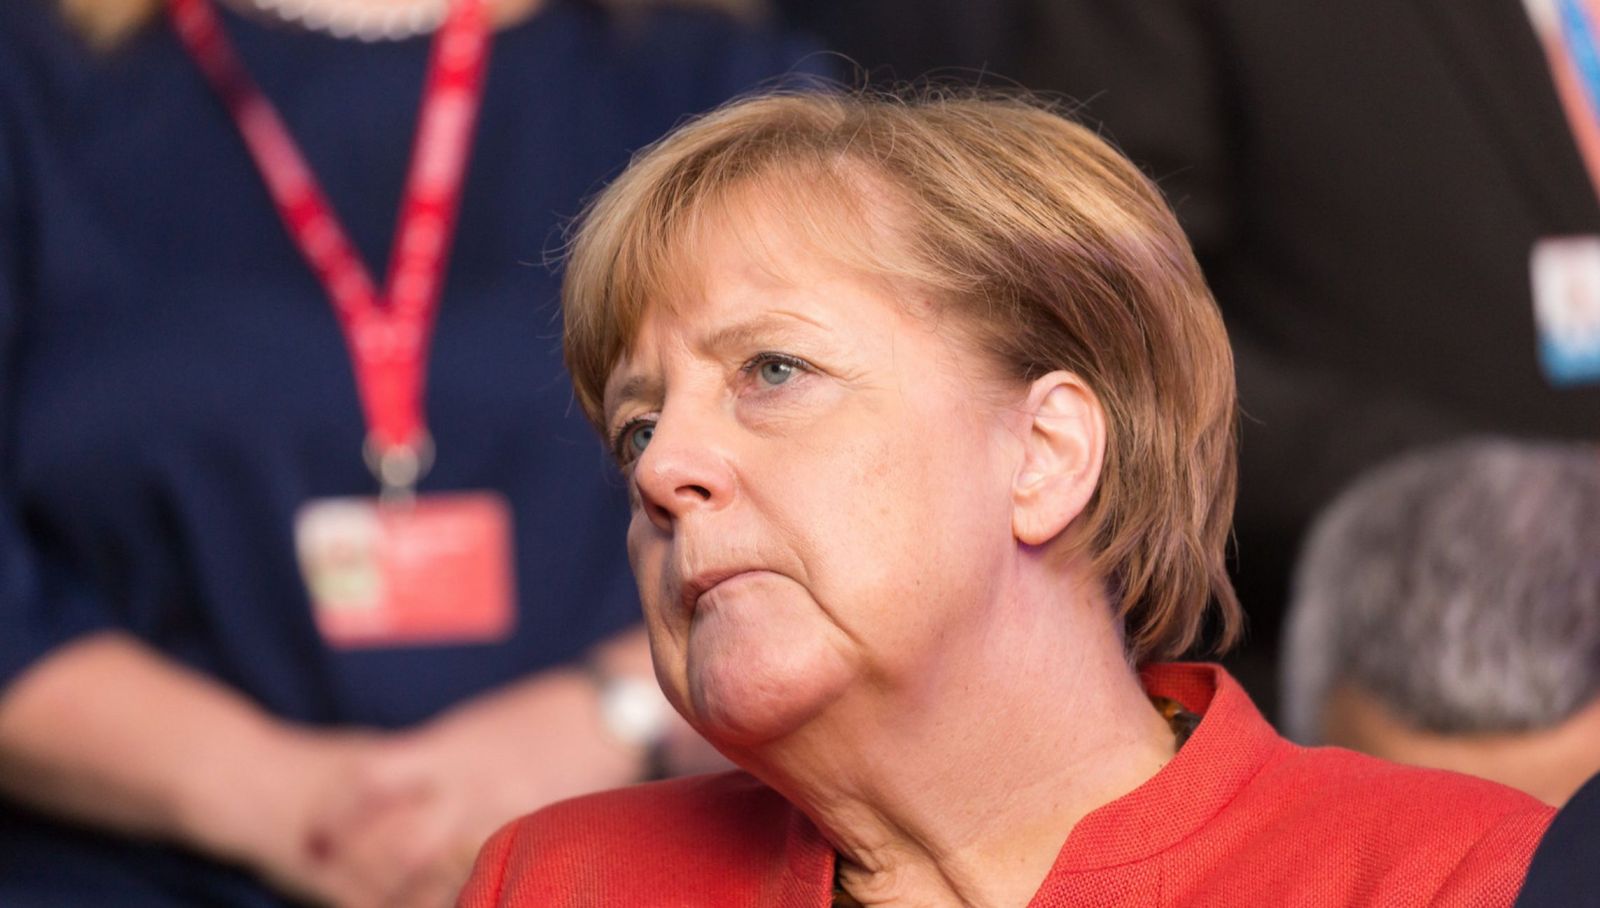 Atetátnici, ktorí sa pokúsili zabiť Hitlera, sú vzormi pre celé Nemecko, vyhlásila Merkelová